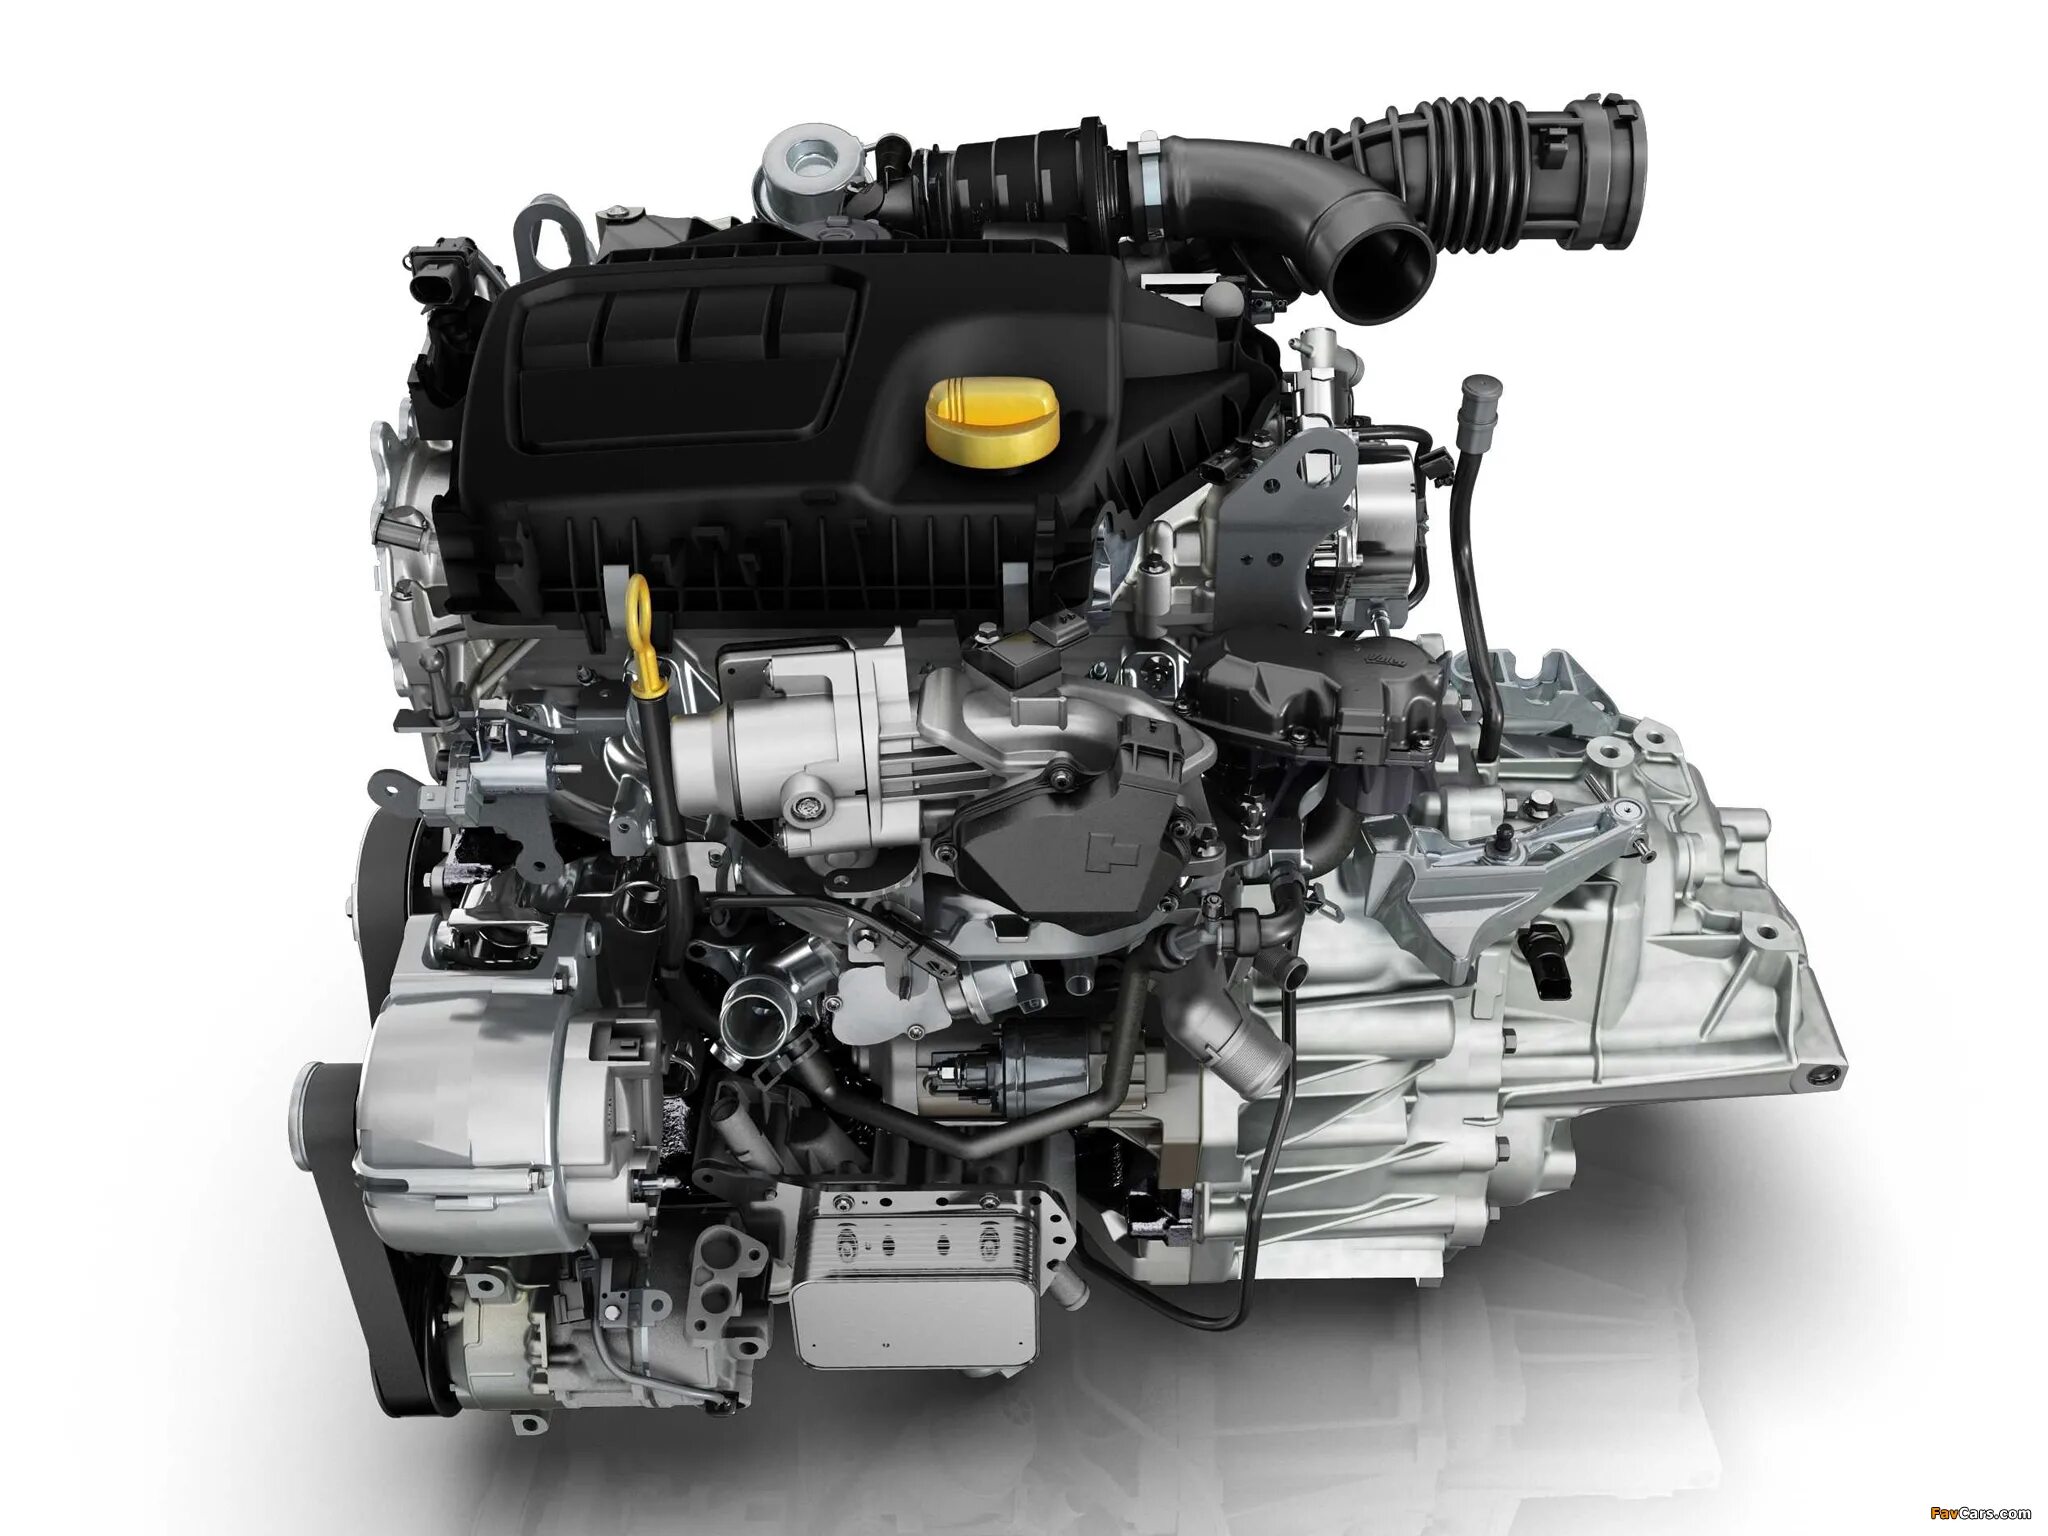 Renault механическая. R9m 1.6 DCI 130л.с. Renault r9m 1.6 DCI. Nissan x-Trail двигатель m9r. R9m 1.6 DCI дизельный турбированный 130.